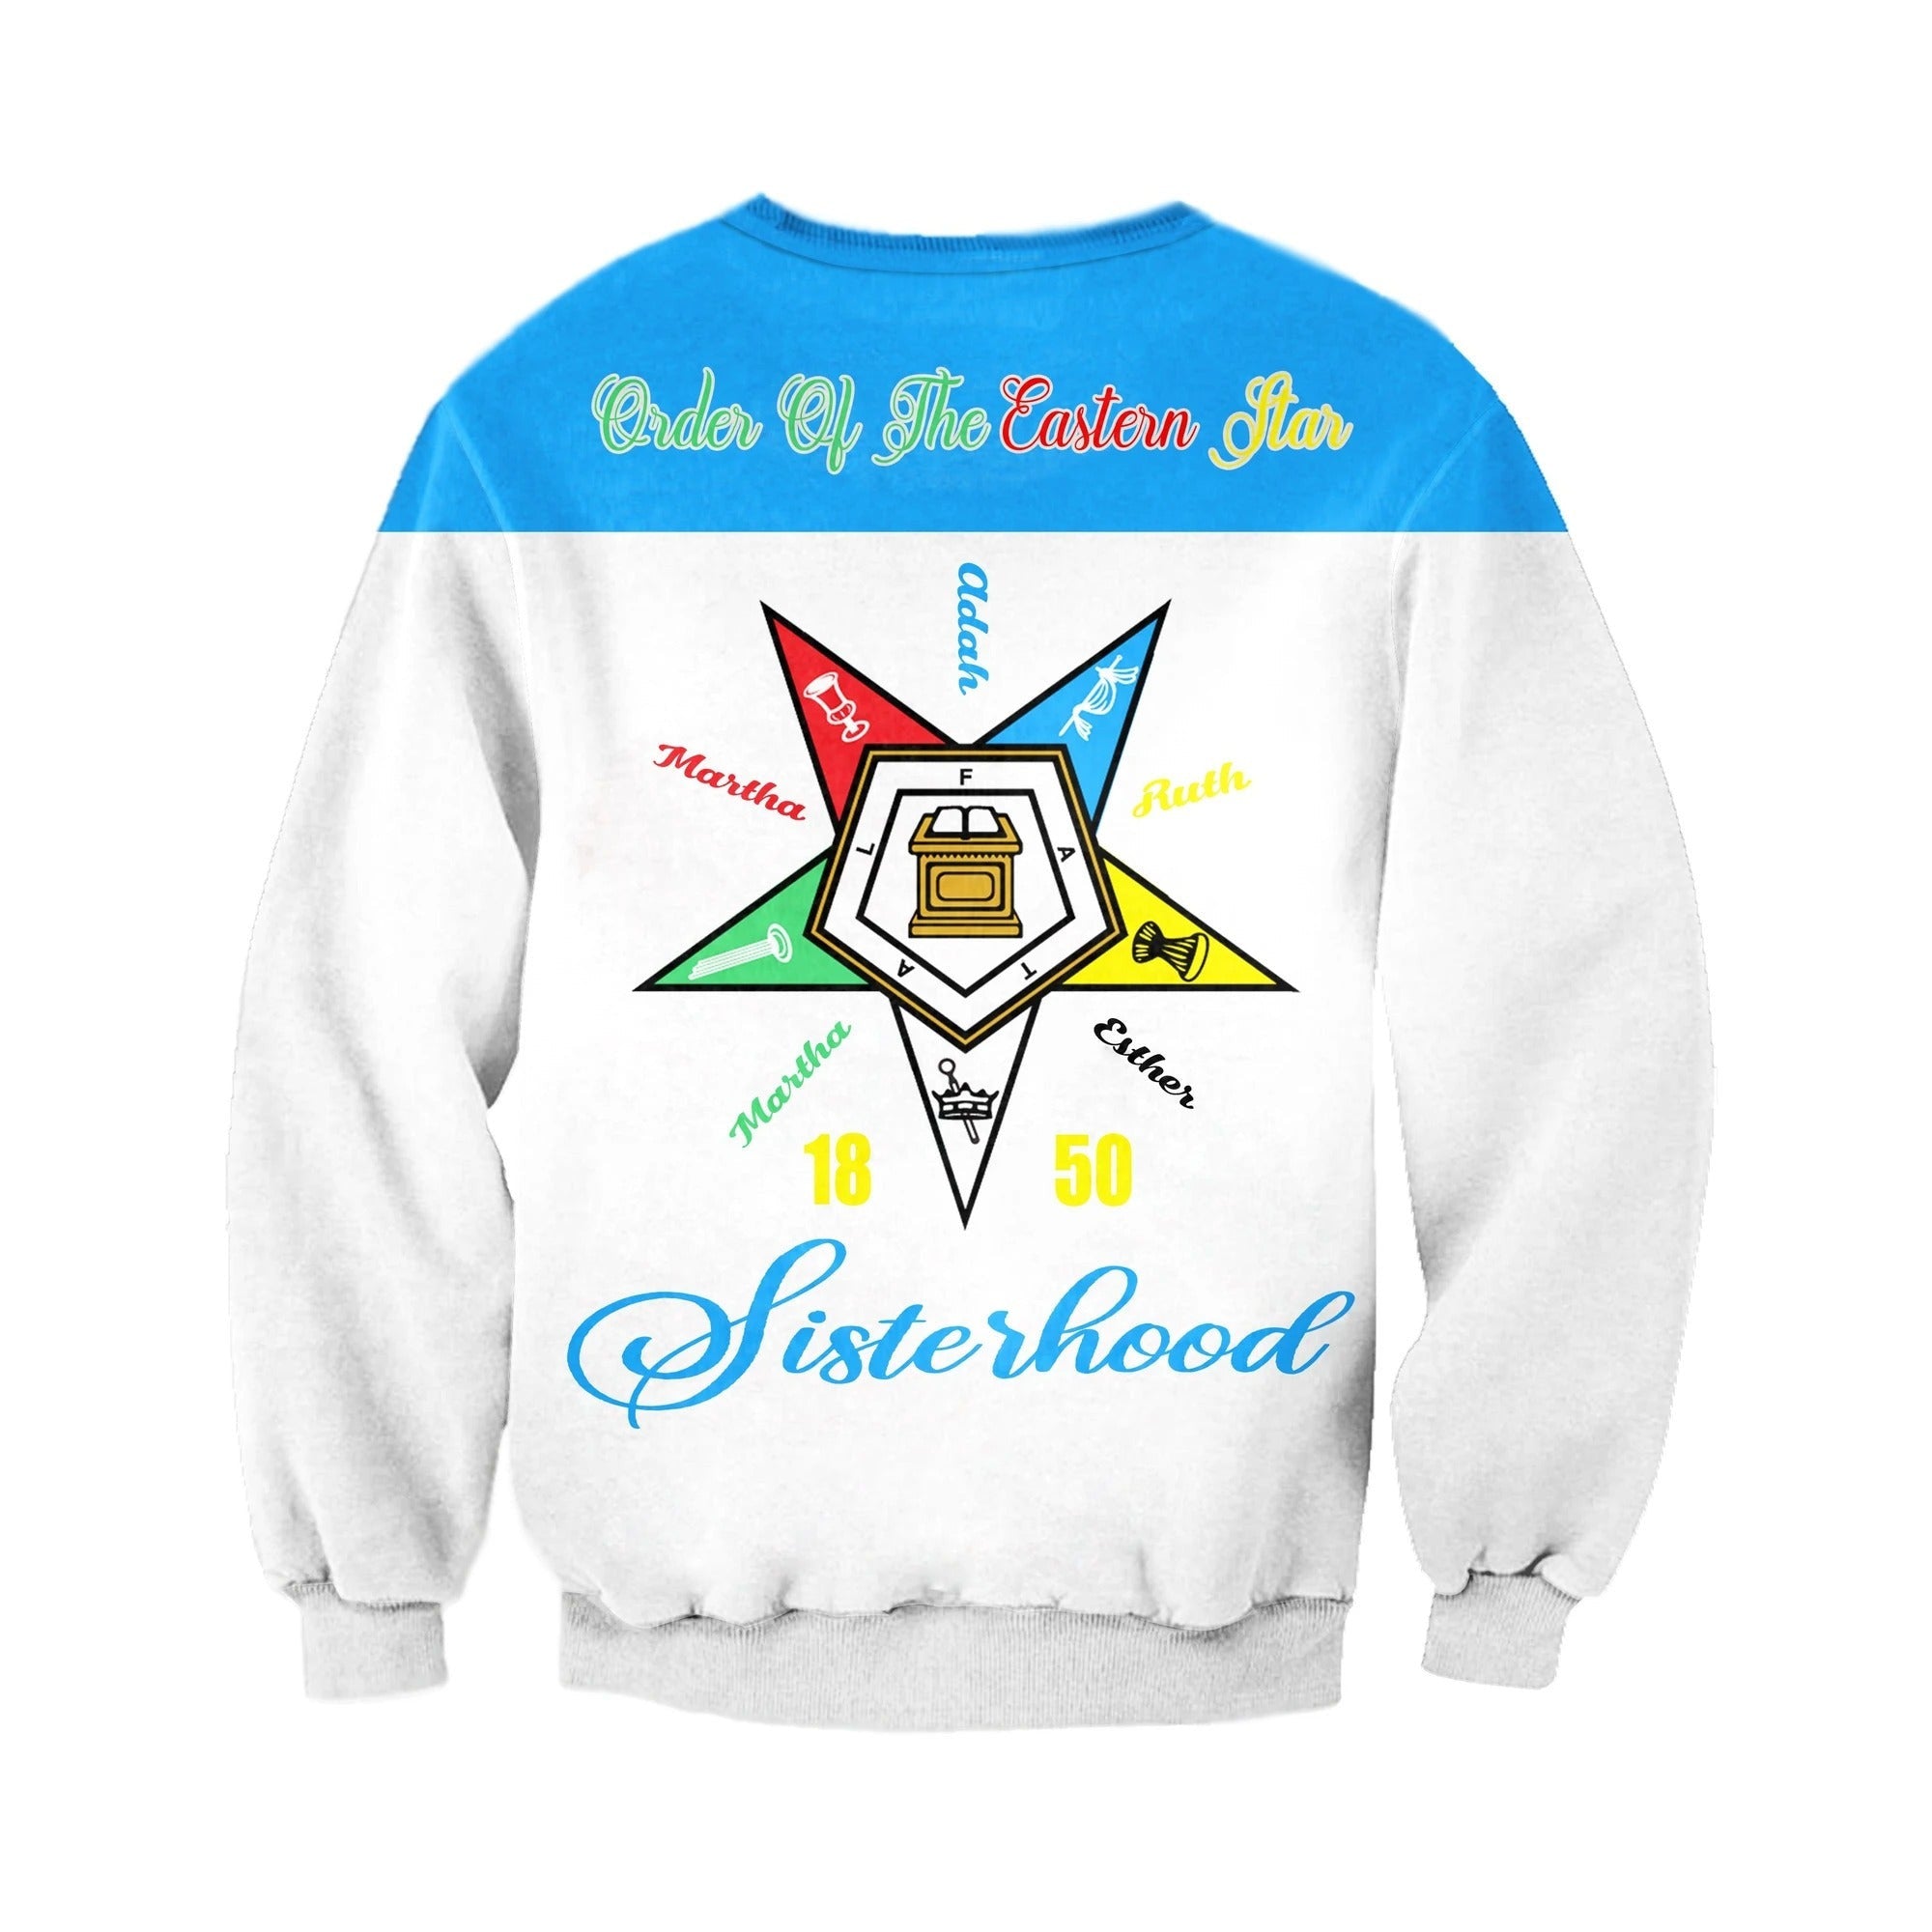 Sorority Sweatshirt - Oes Worldwide Sisterhood 1850 Sweatshirt